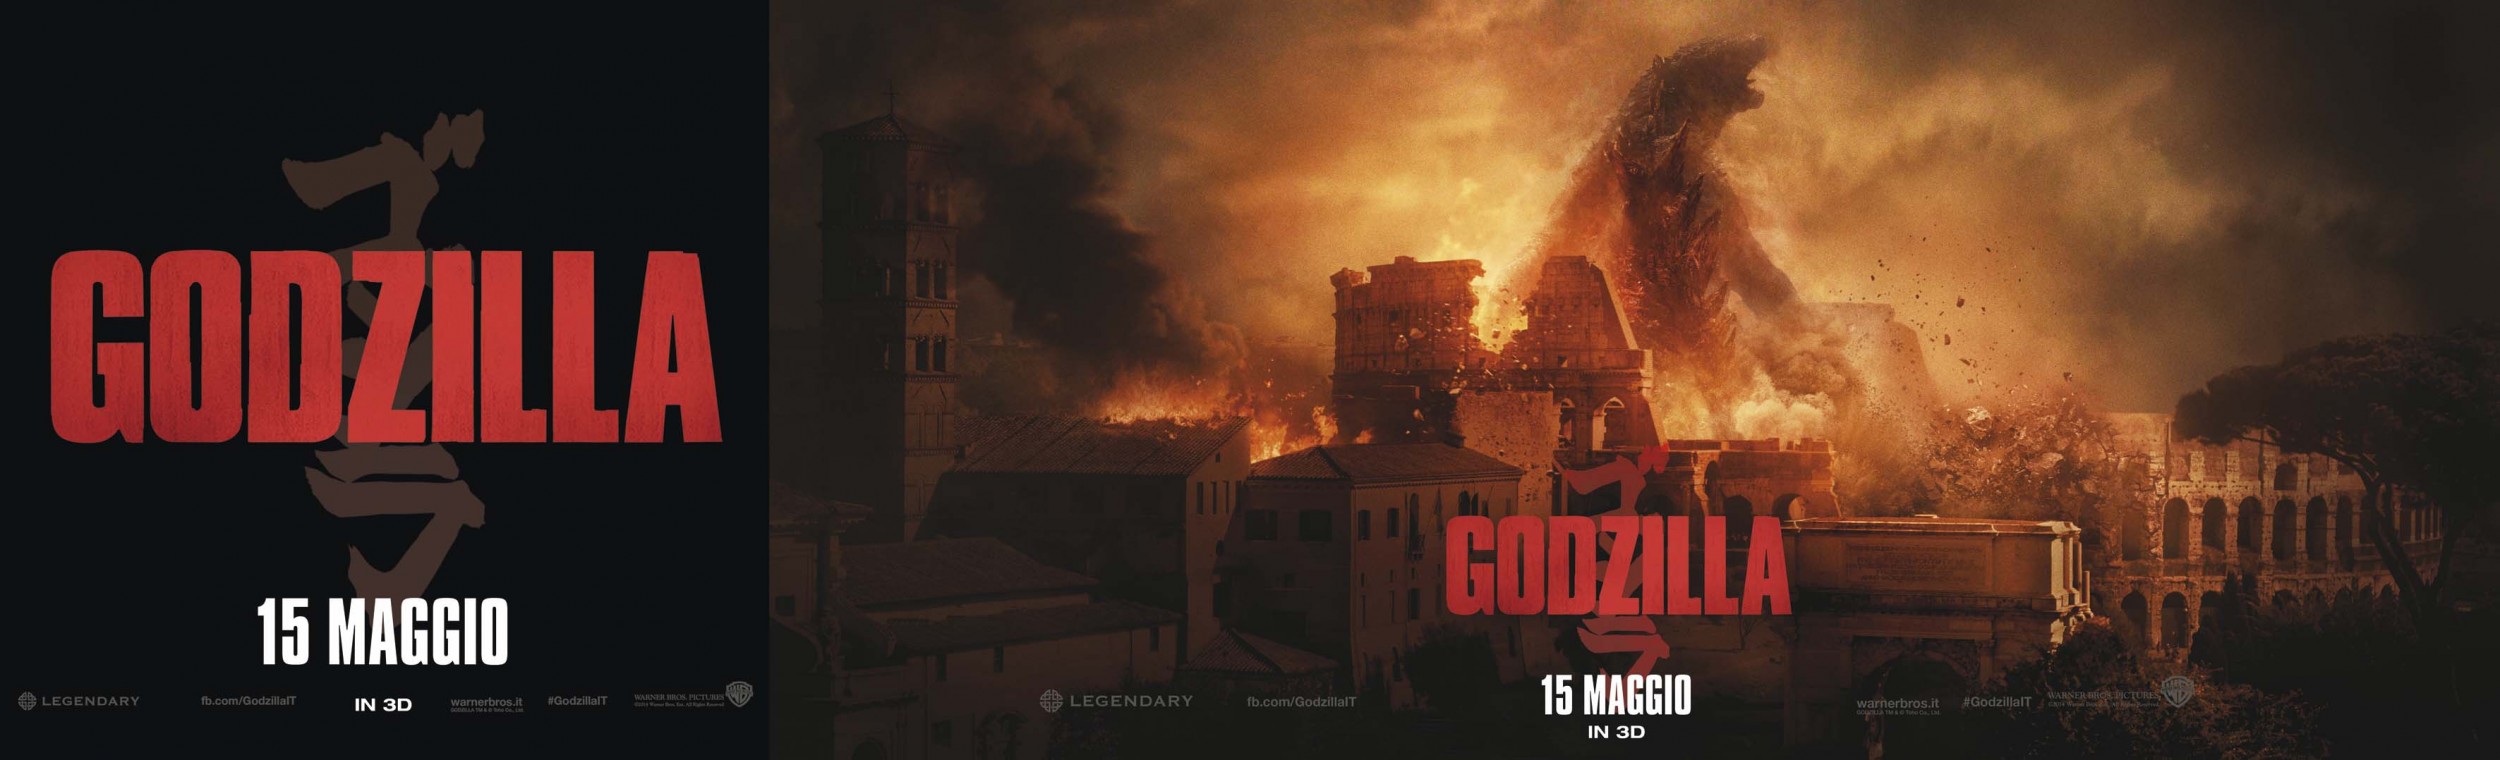 Mega Sized Movie Poster Image for Godzilla (#18 of 22)